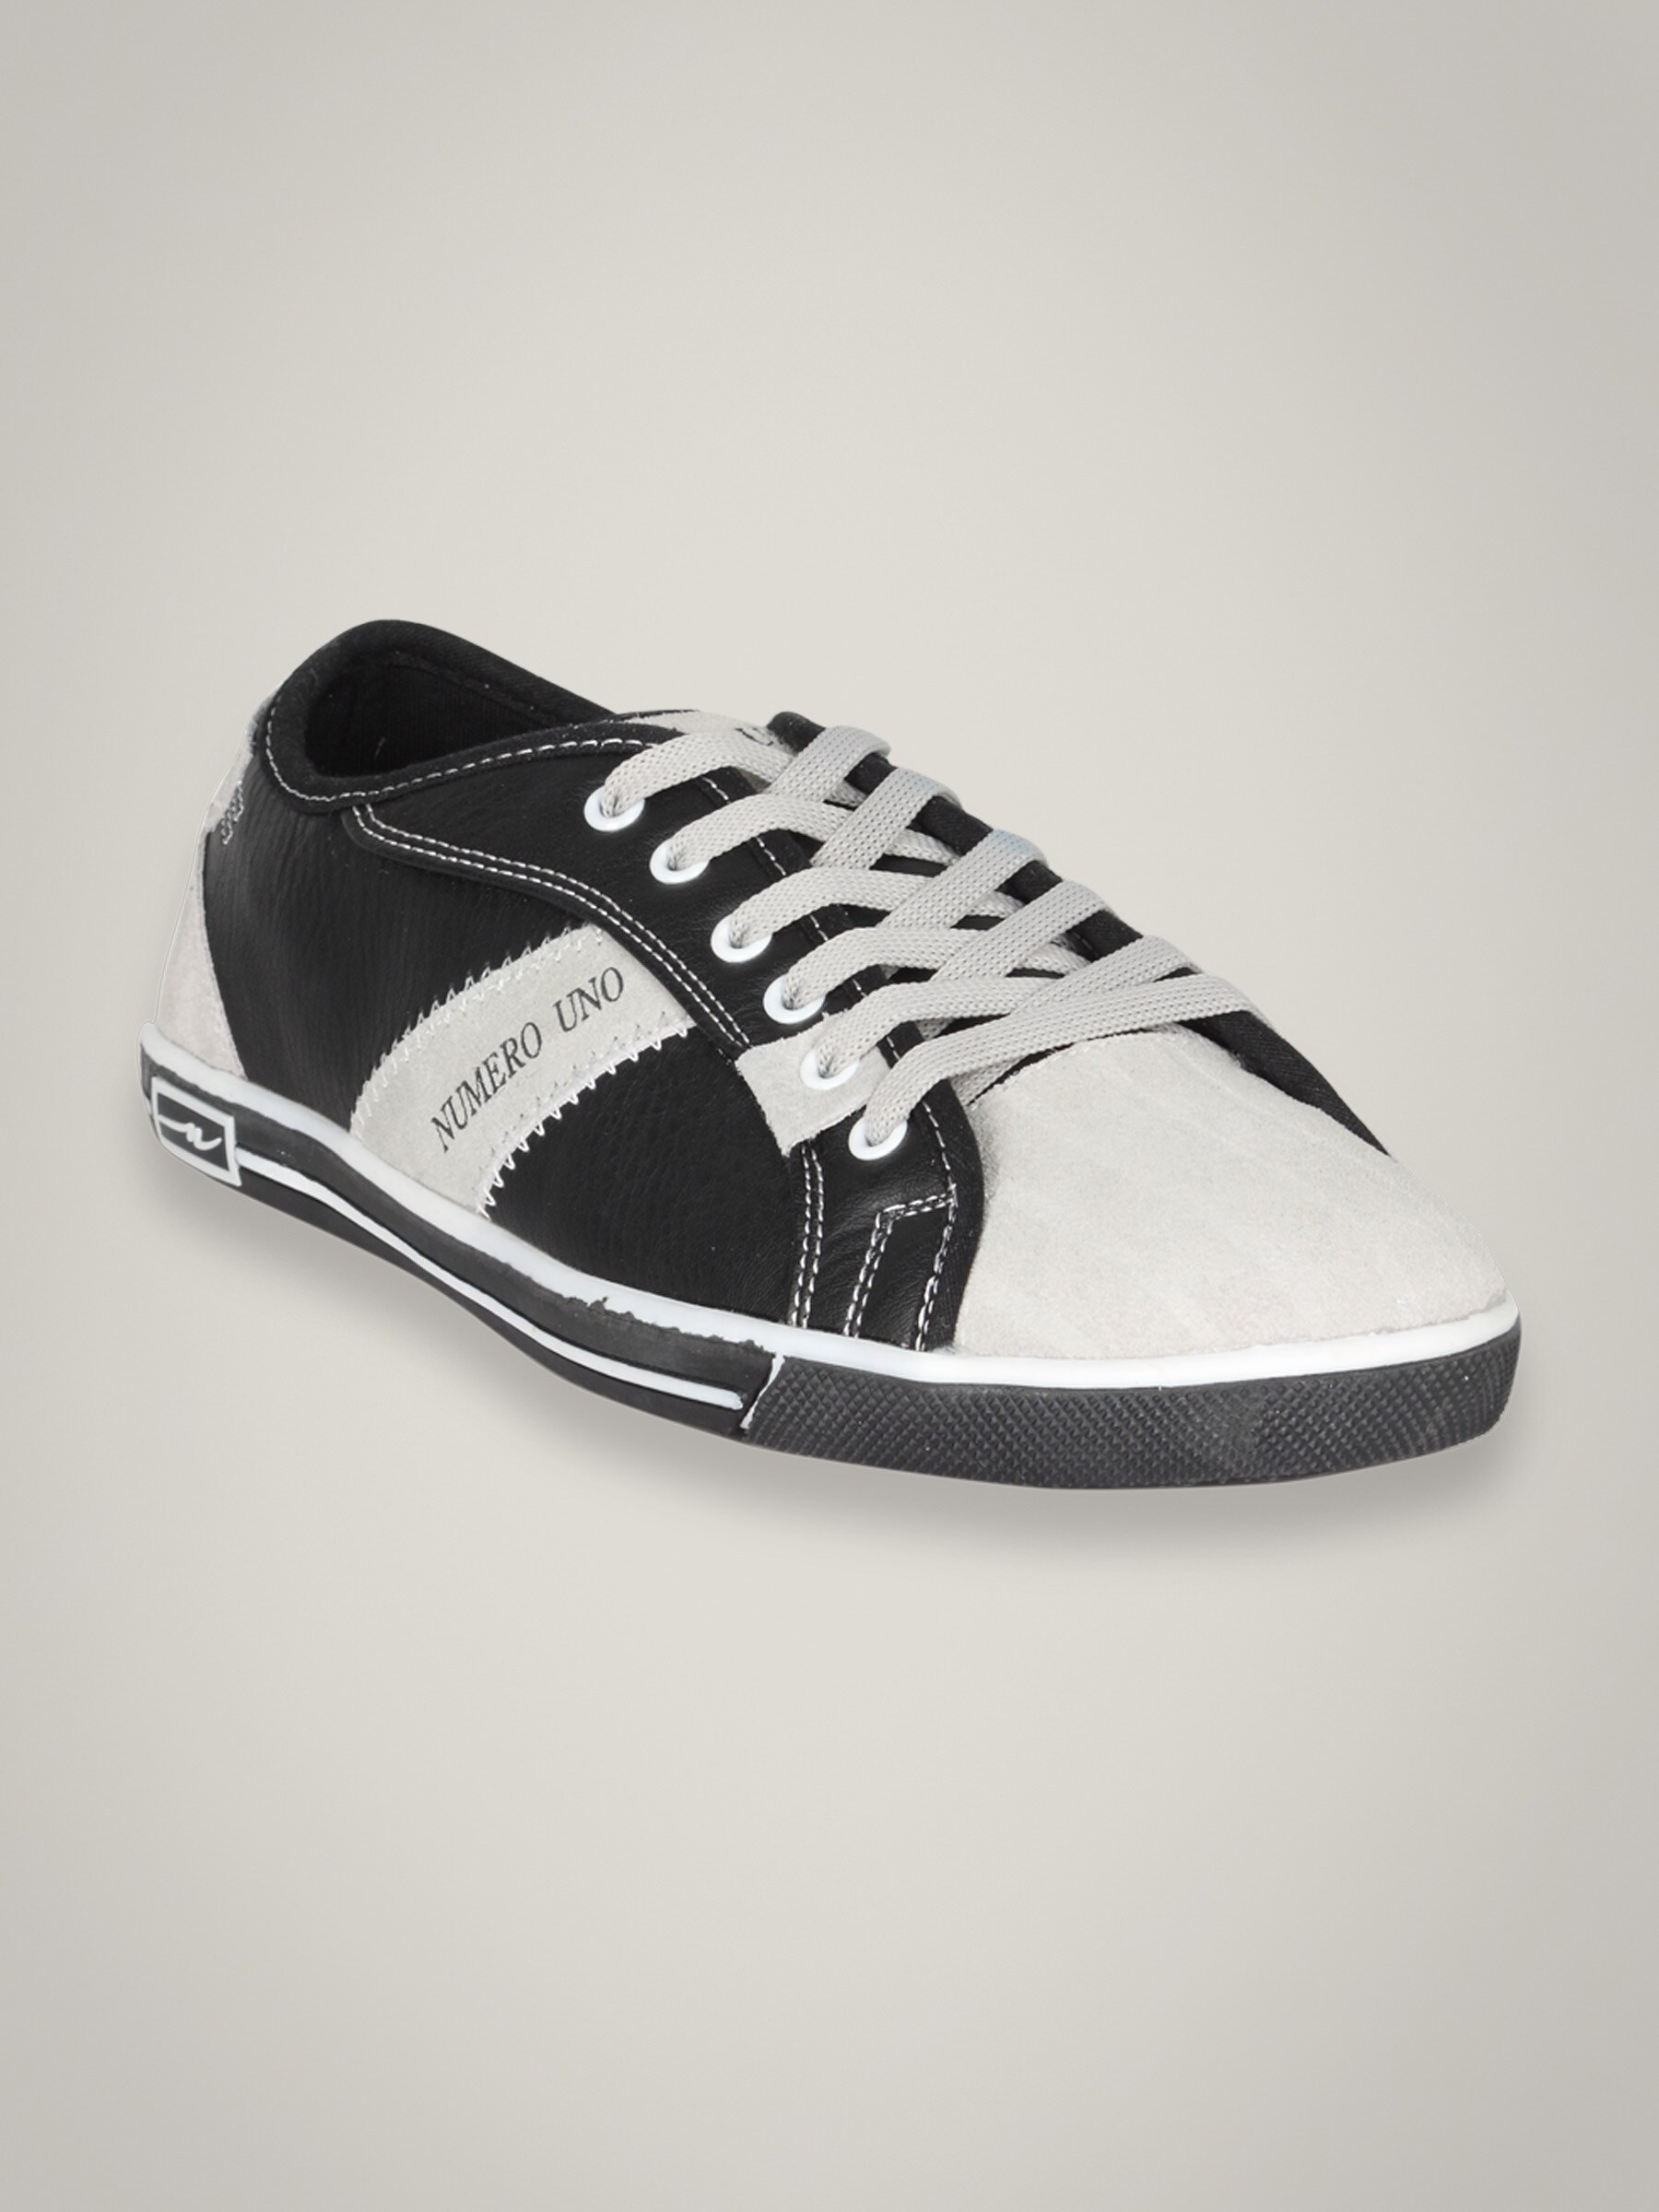 Numero Uno Men's Black Grey Shoe